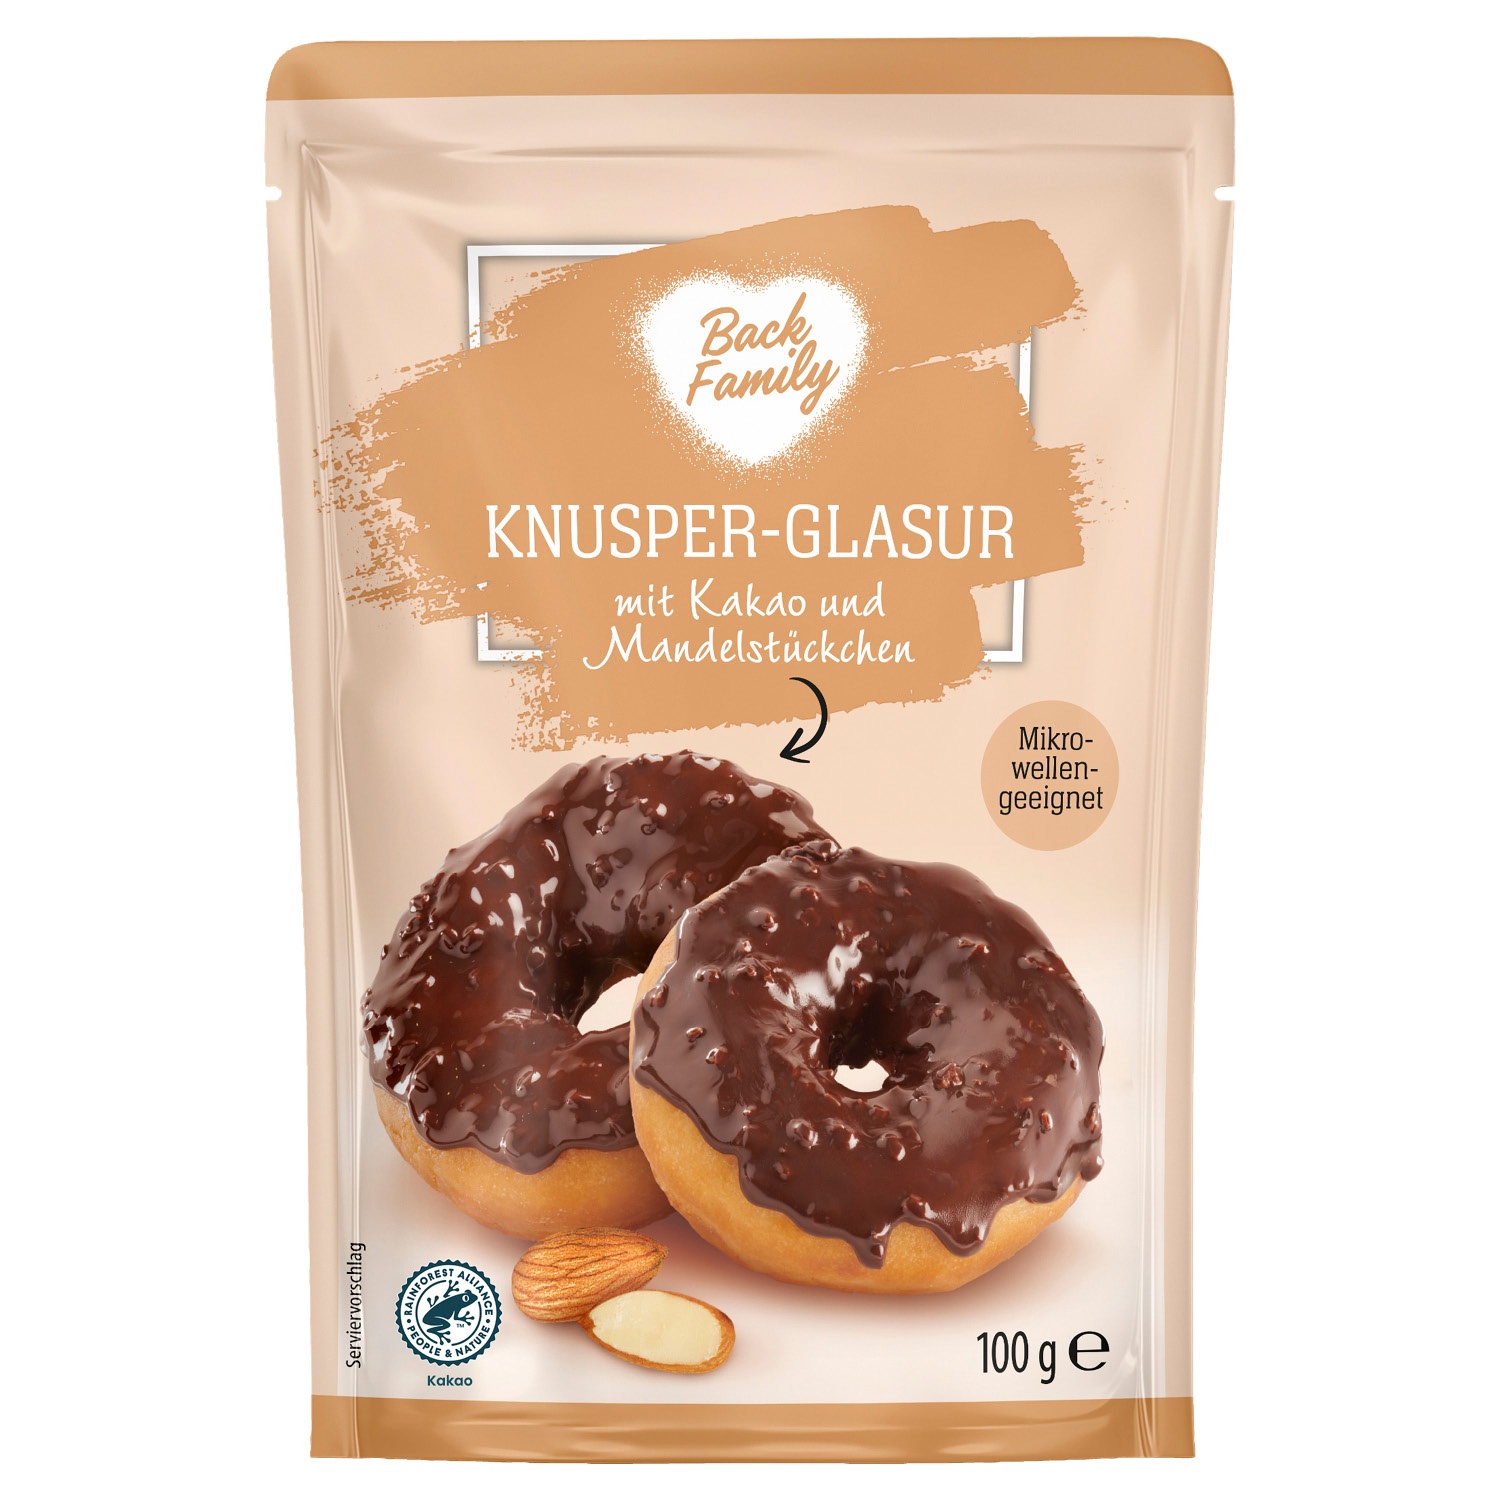 Back Family Knusper-Glasur 100 g